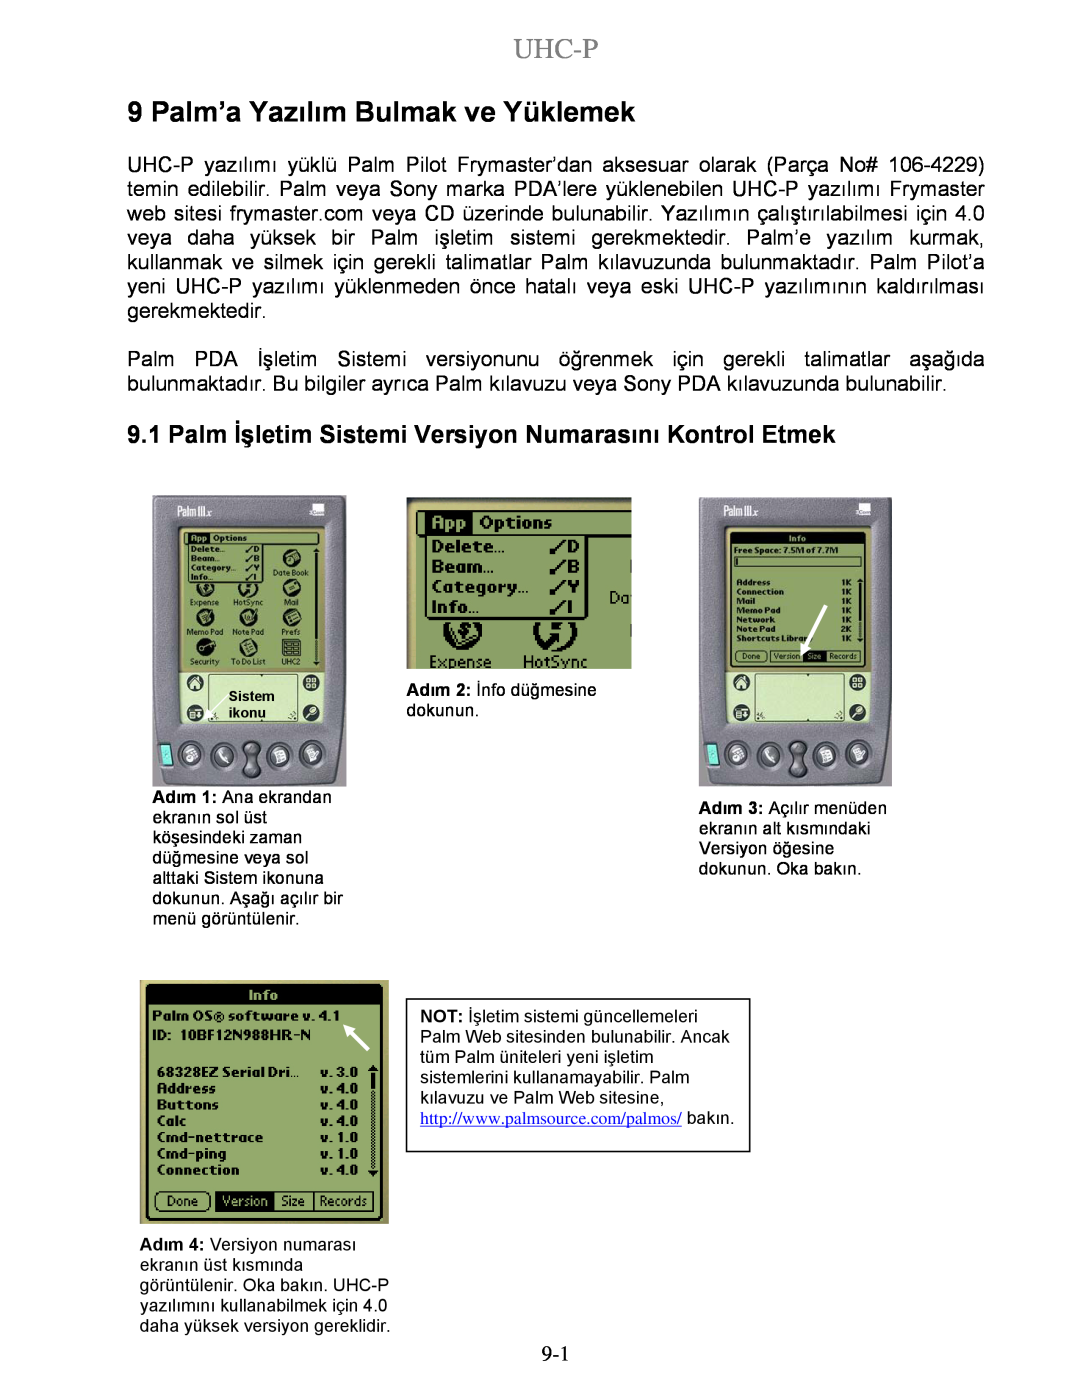 Frymaster UHC-P 4-yuva, UHC-P 2-yuva manual Palm’a Yazılım Bulmak ve Yüklemek, Uhc-P, Adım 2 İnfo düğmesine, dokunun 